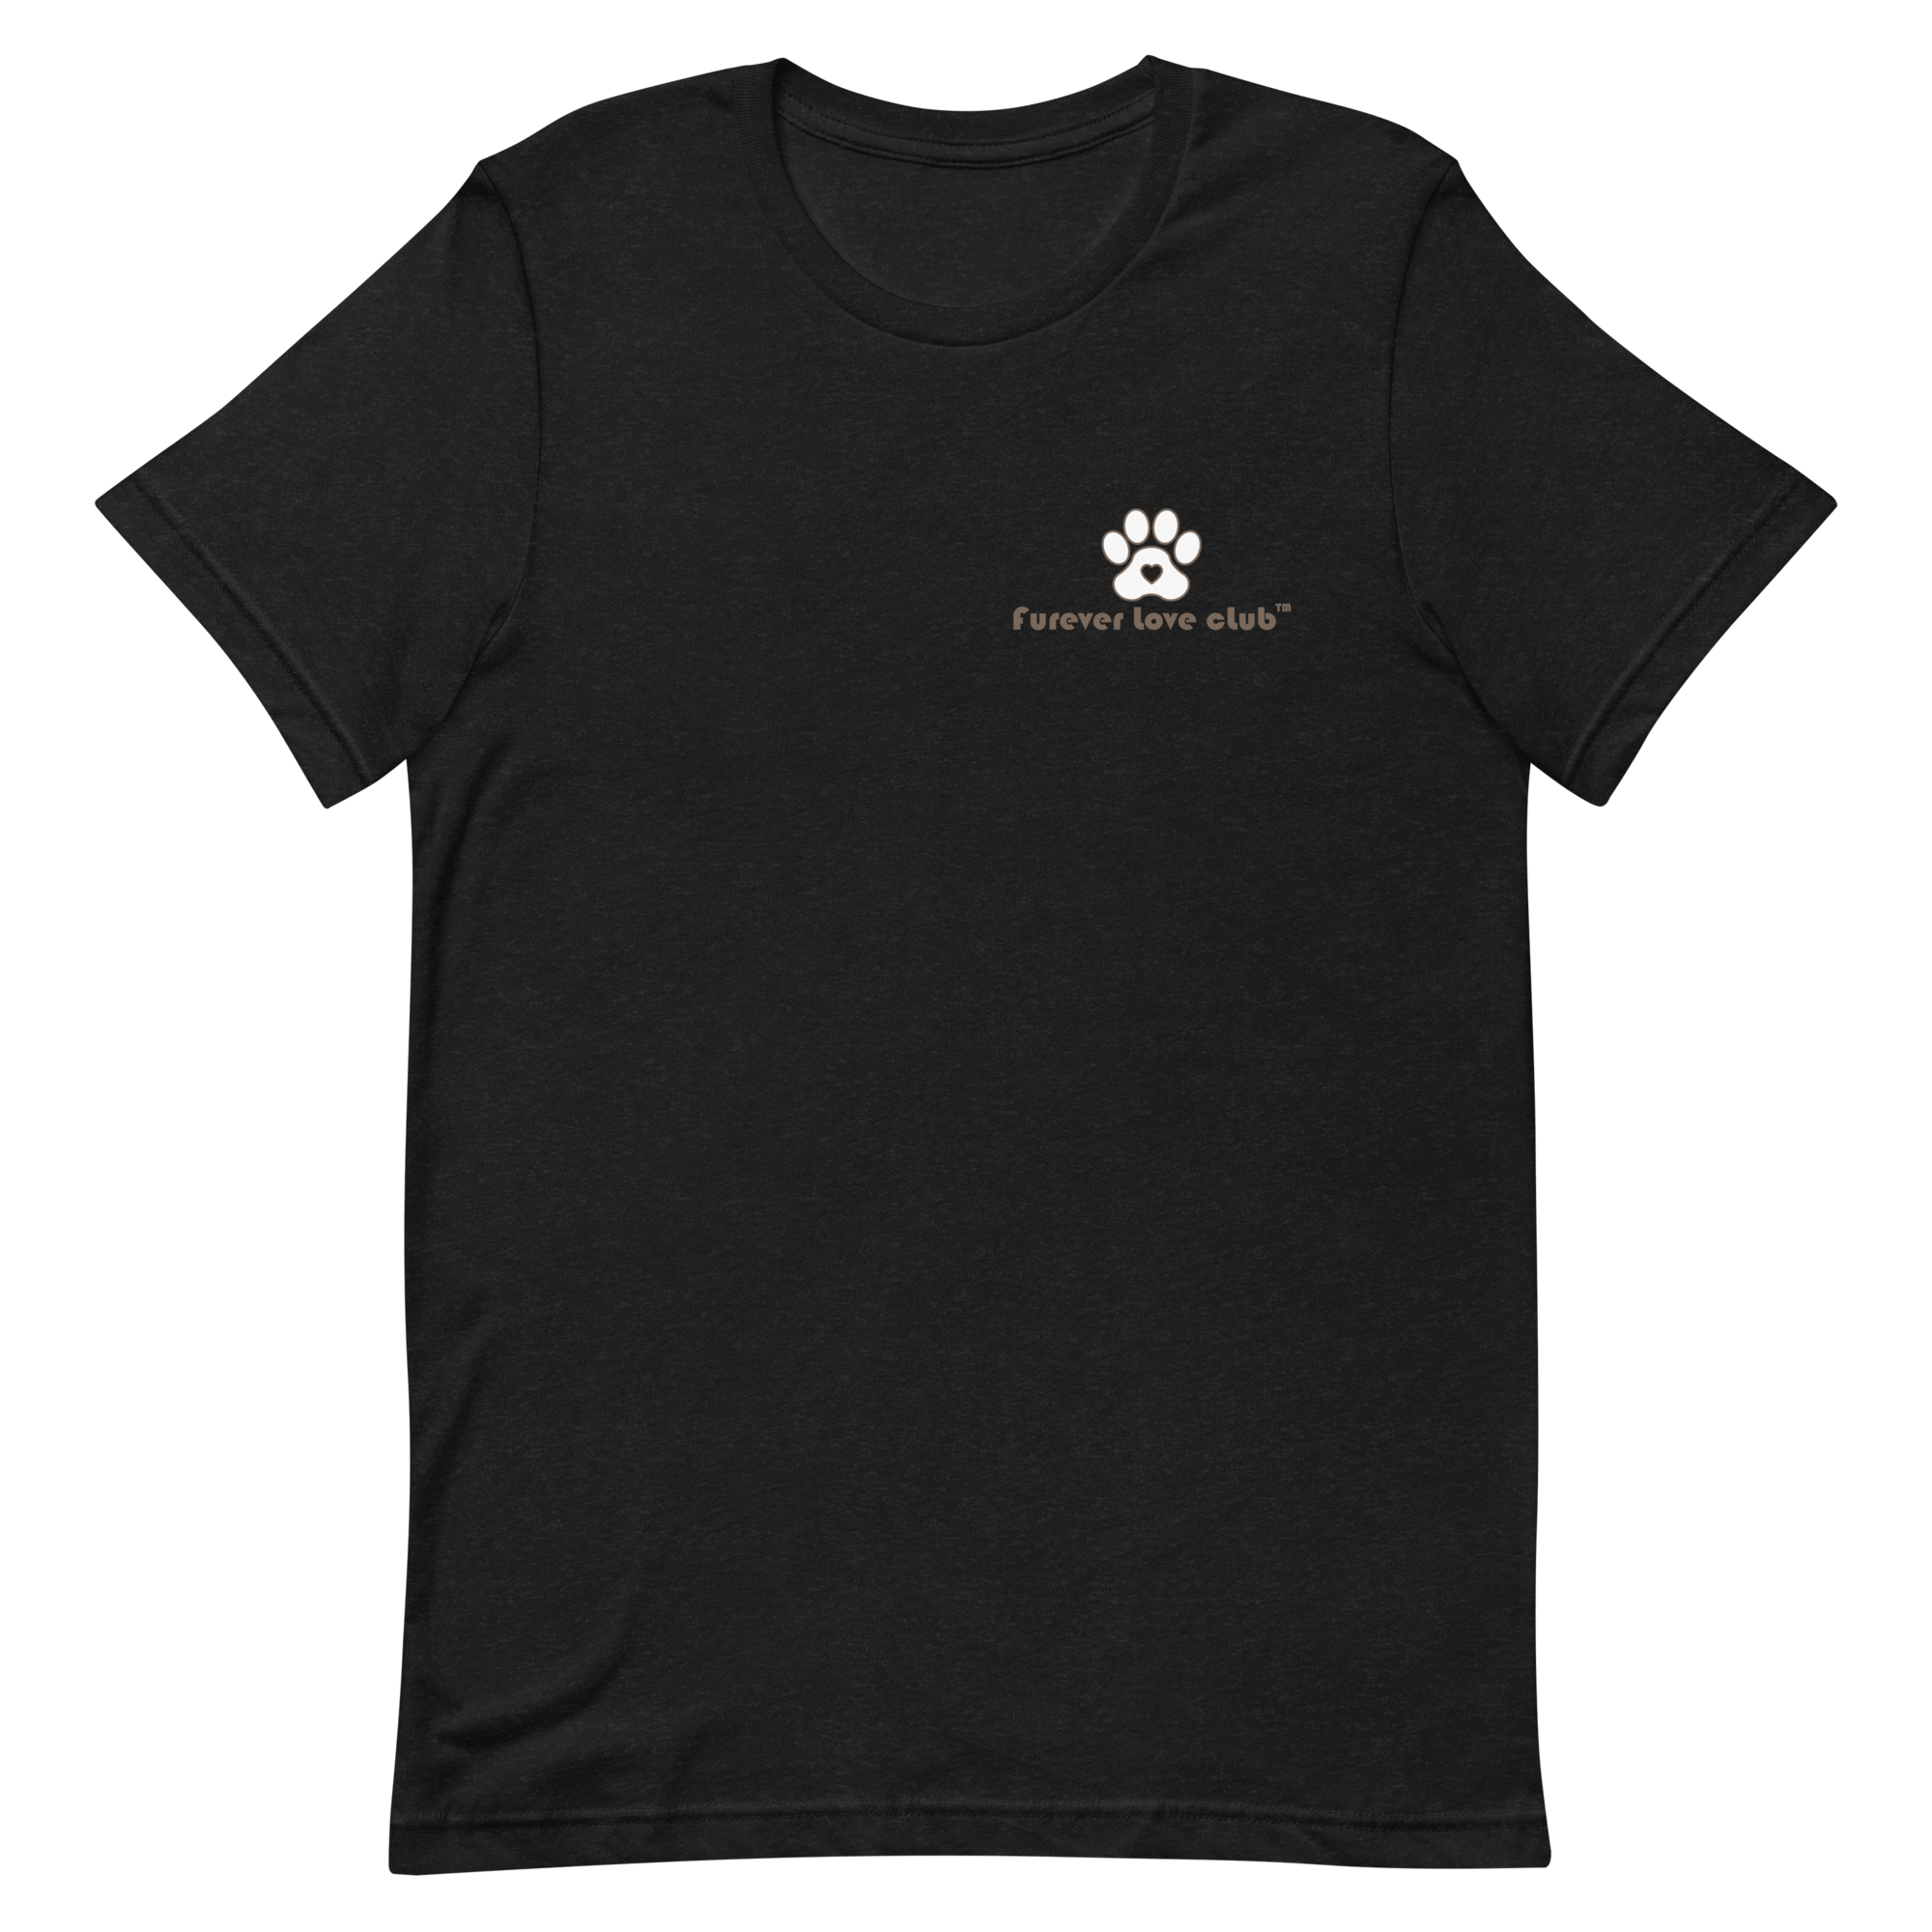 8183-unisex-staple-t-shirt-black-heather-front-623a23cf83e84.png